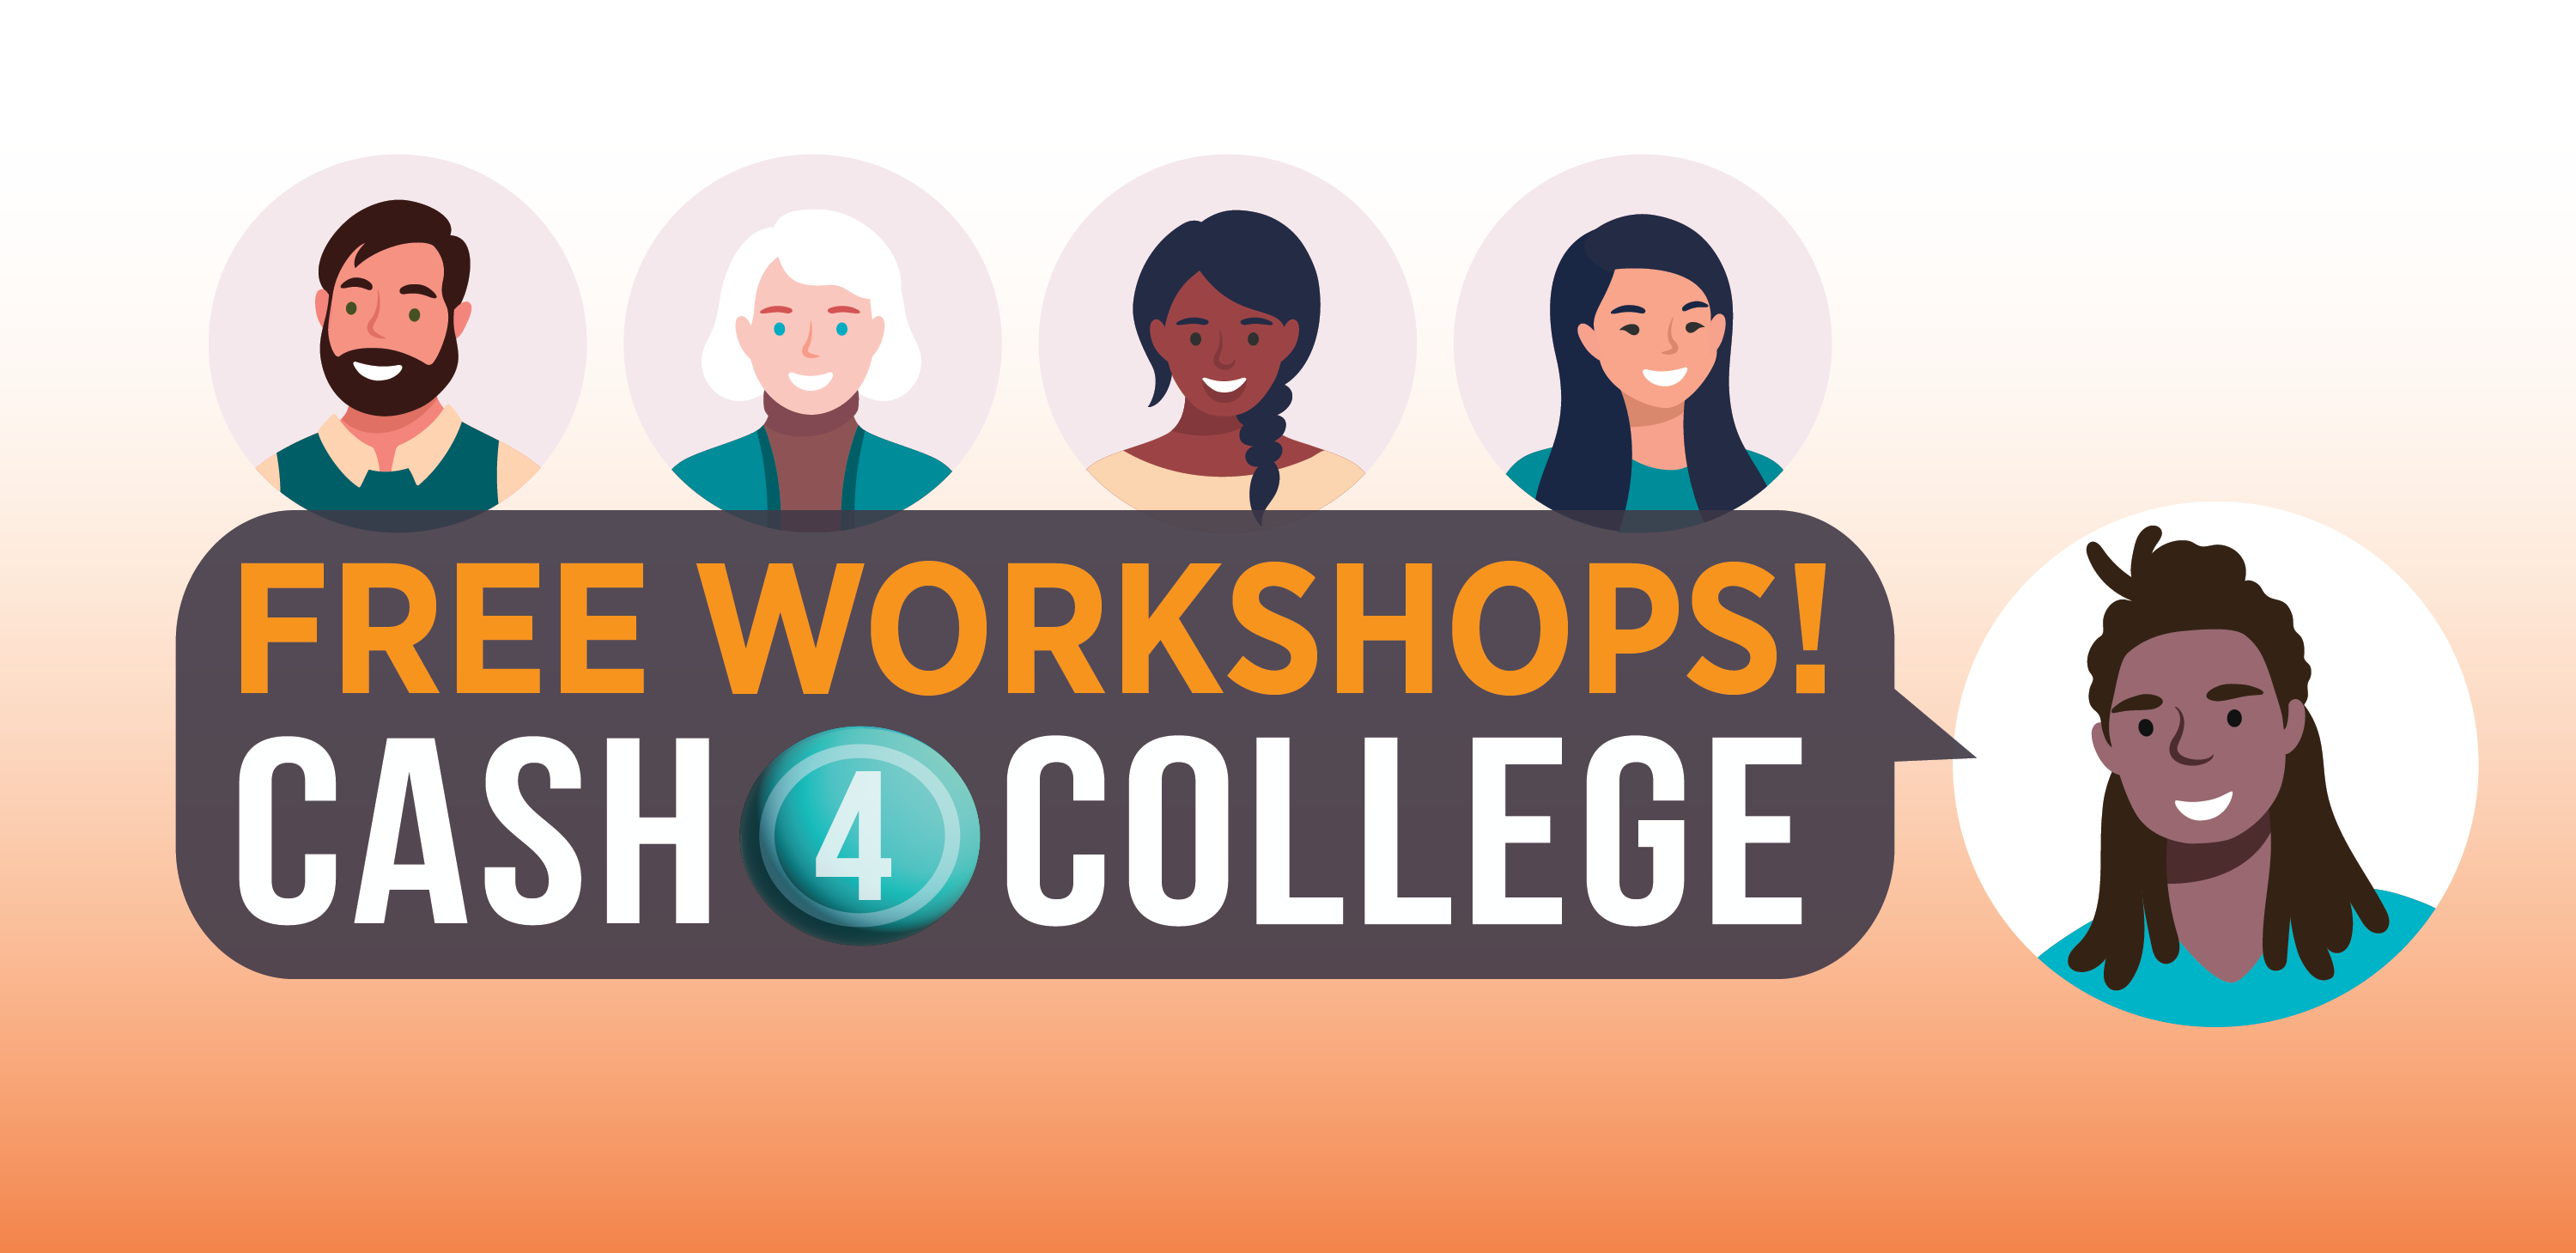 free workshops! Cash 4 College